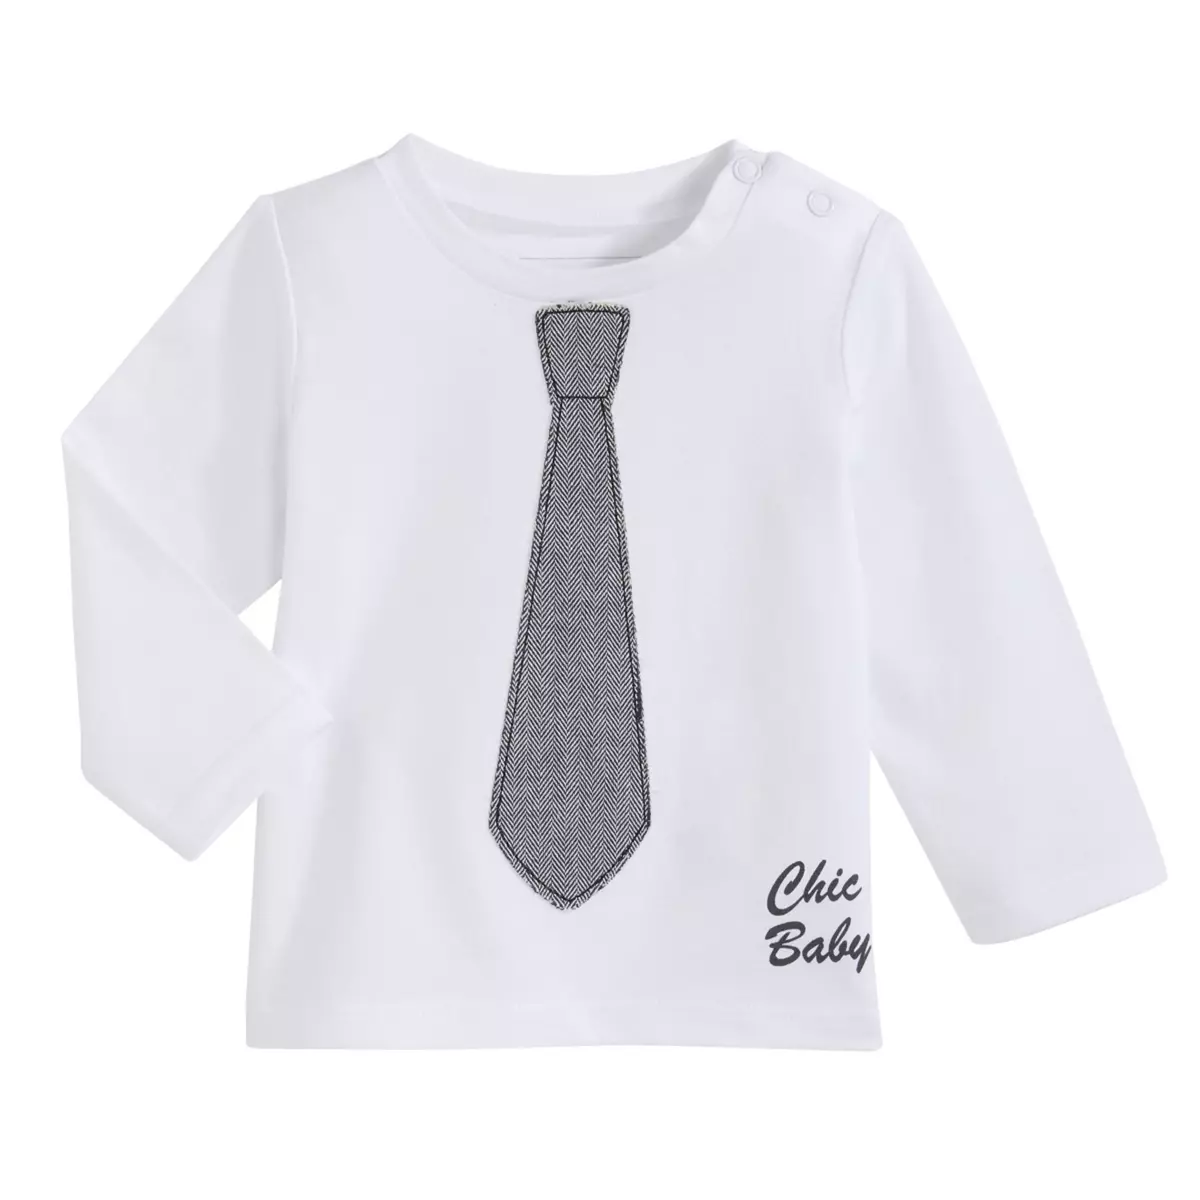 INEXTENSO Tee-shirt cravate manches longues bébé garçon